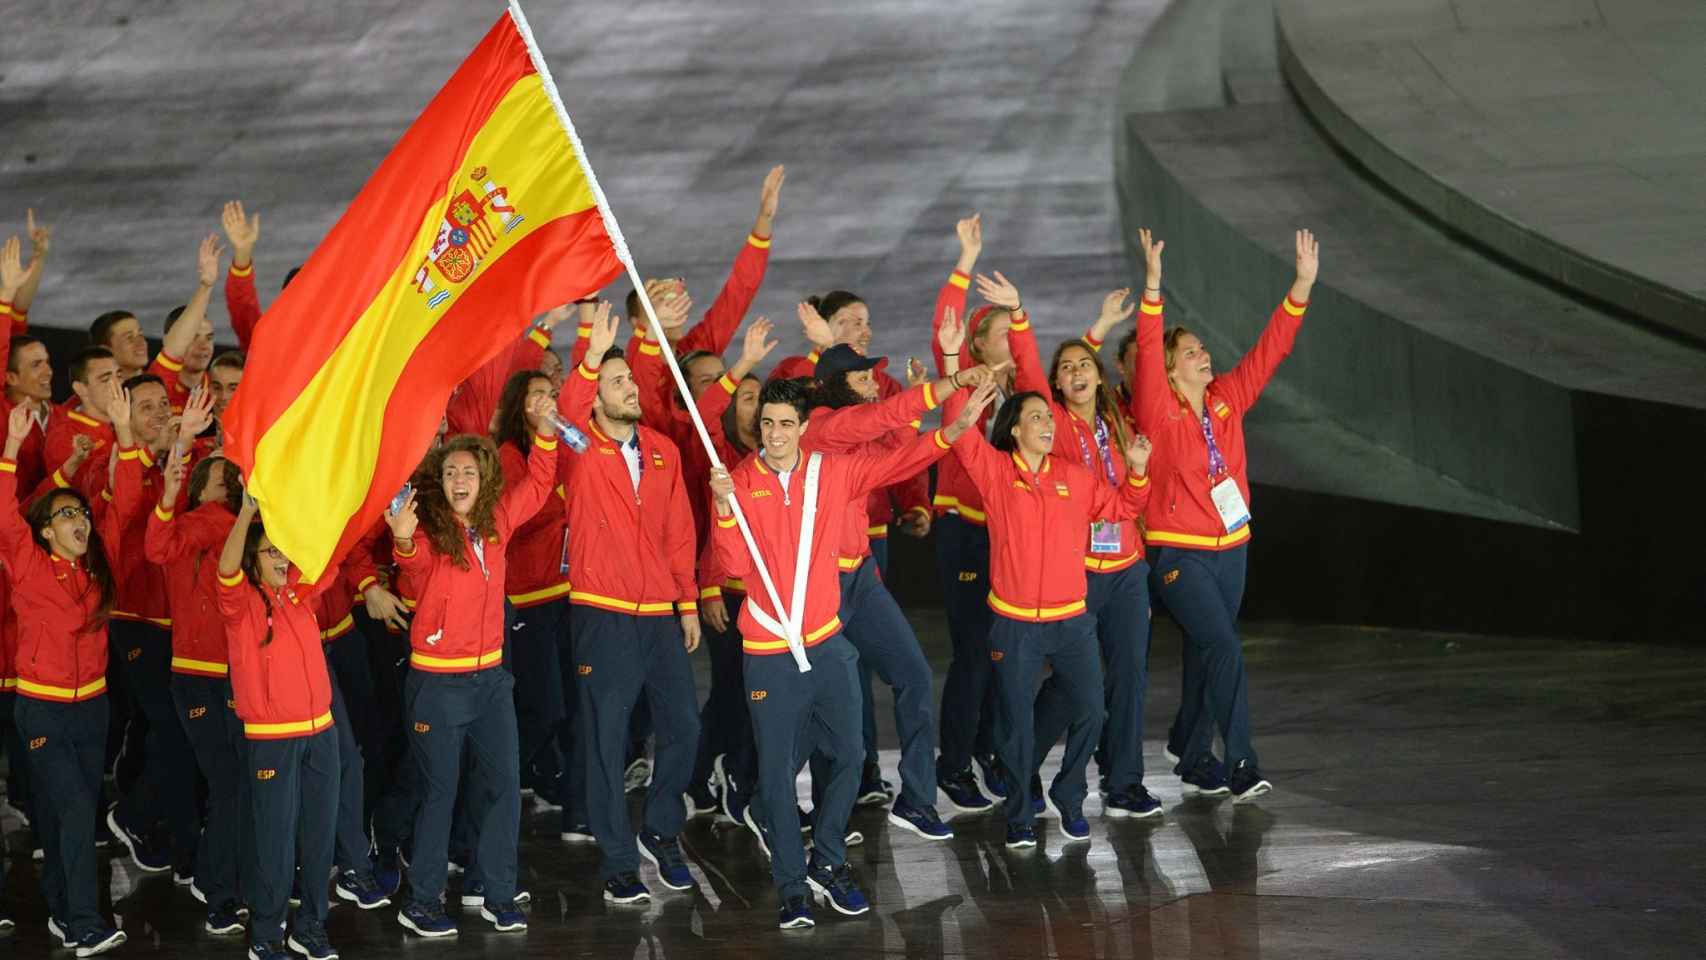 Joma vestirá a los deportistas españoles en las olimpiadas de Río de Janeiro